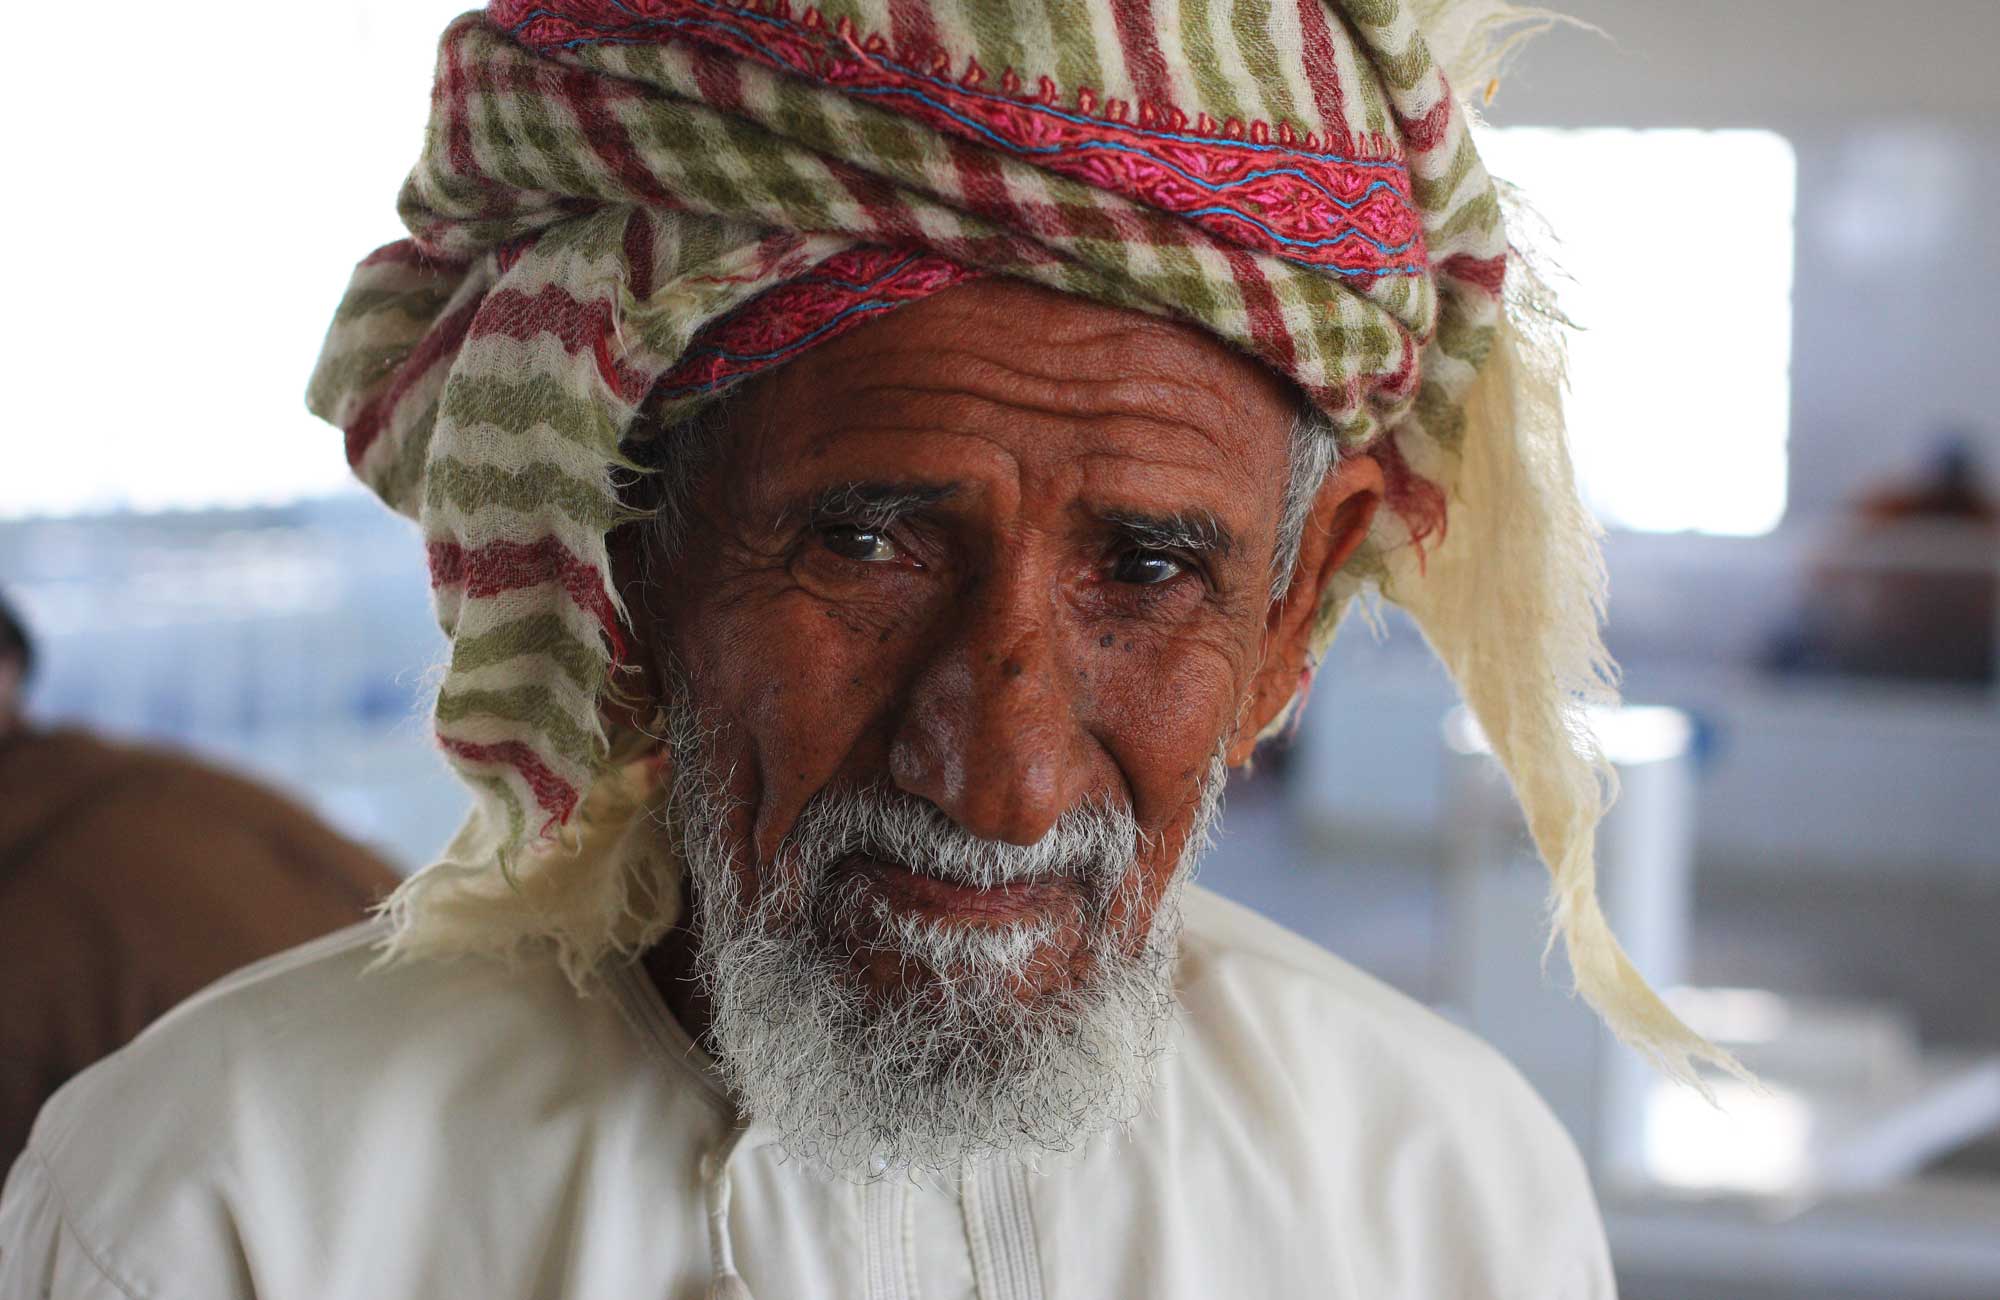 Le sourire des habitants du Sultanat d'Oman 